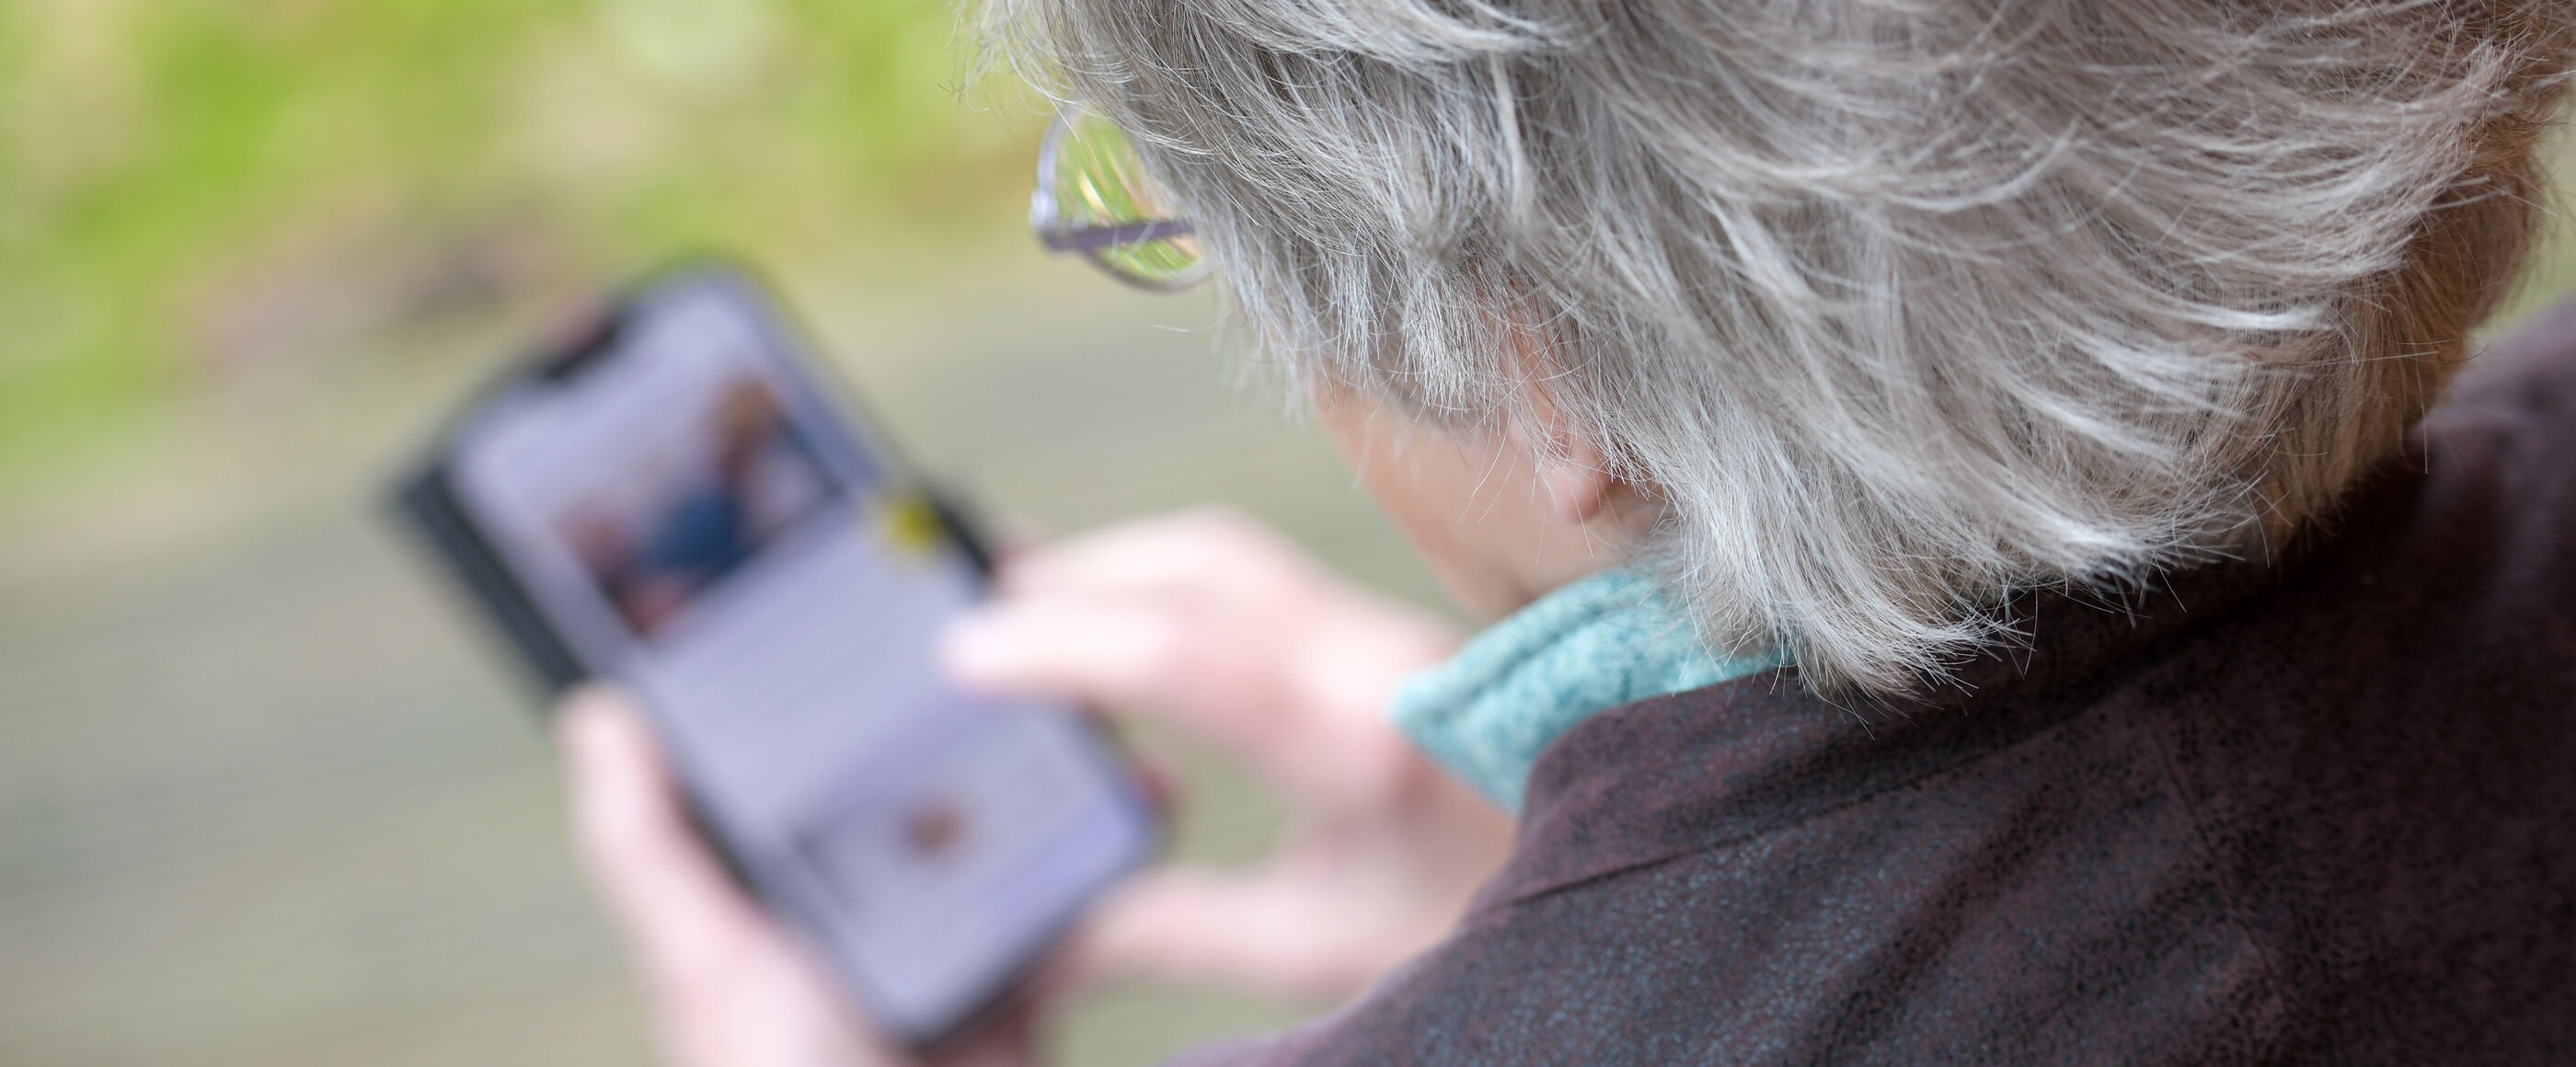 Eine ältere Frau mit grauen Haaren schaut auf ein Smartphone.